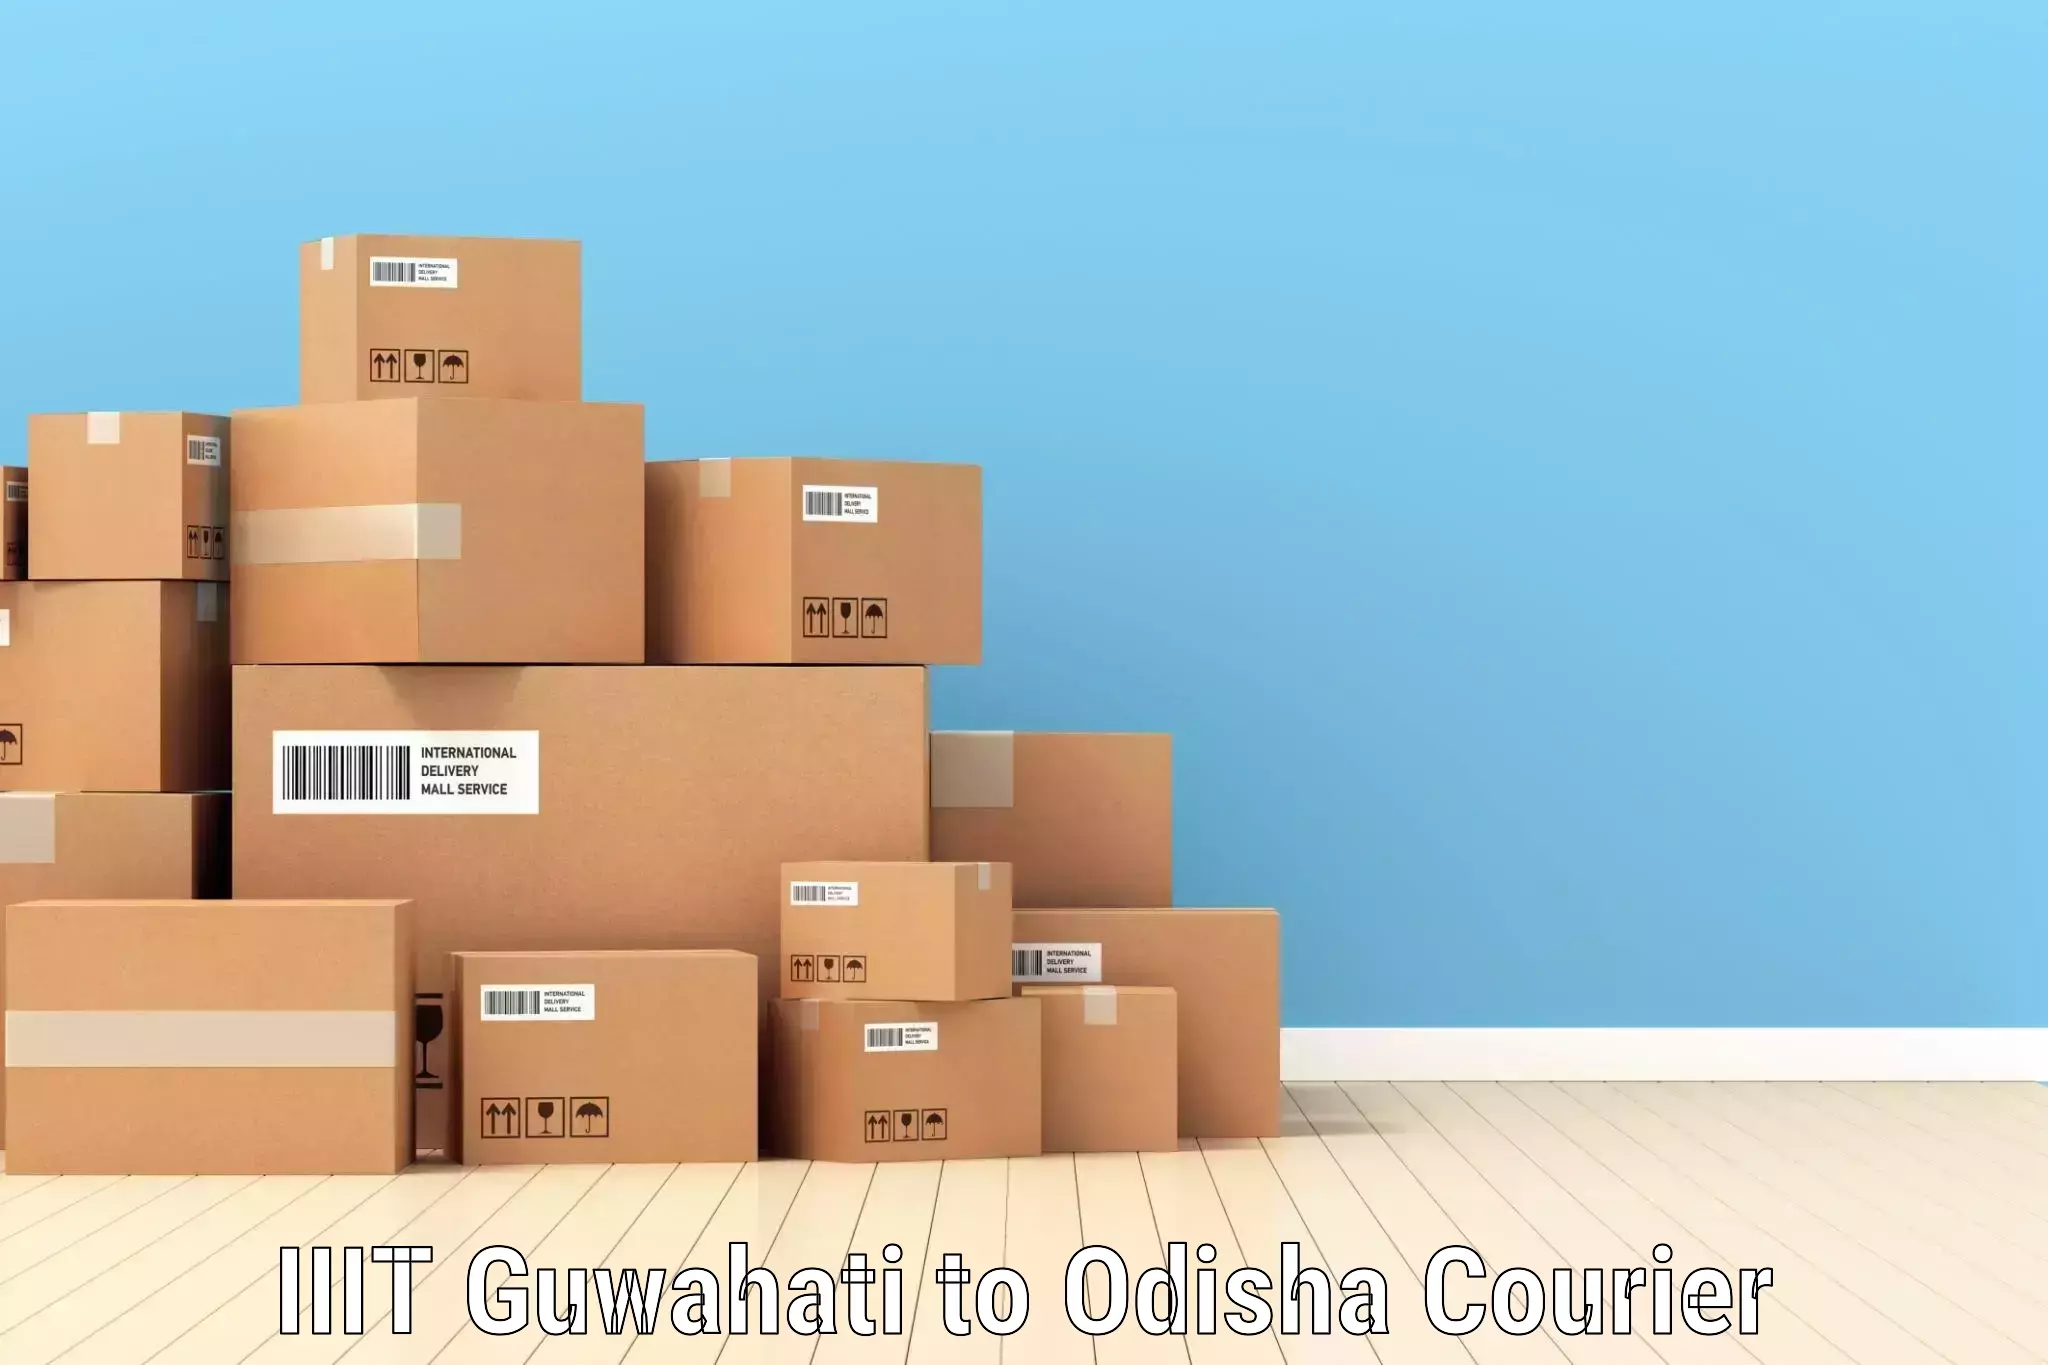 Flexible parcel services IIIT Guwahati to Odisha